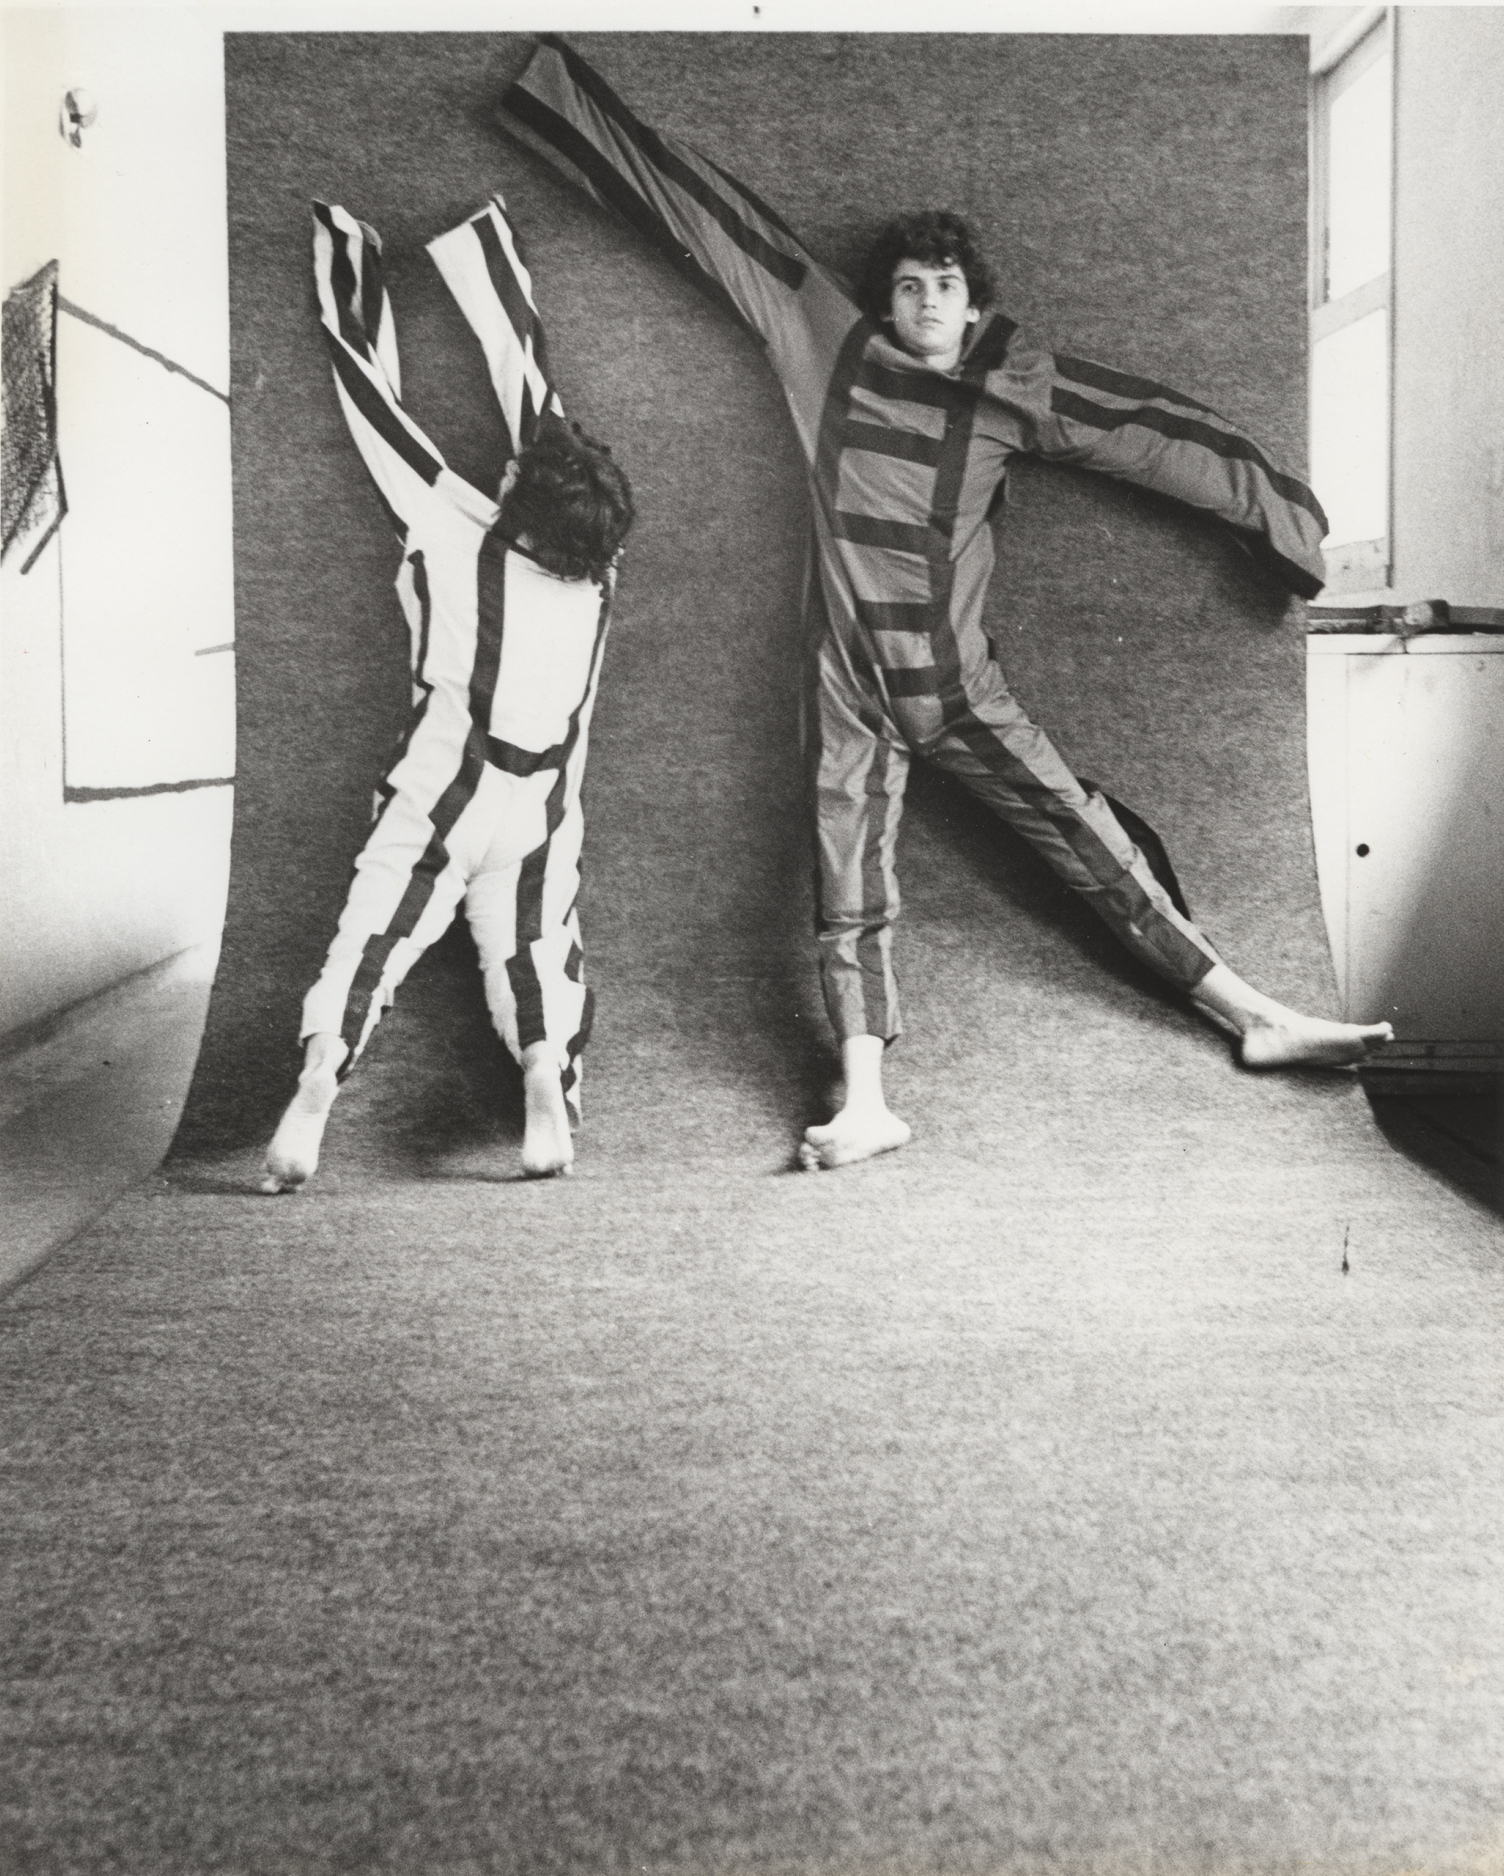 Martha Araújo | Documentação fotográfica da performance “Para um corpo nas suas impossibilidades”, 1985